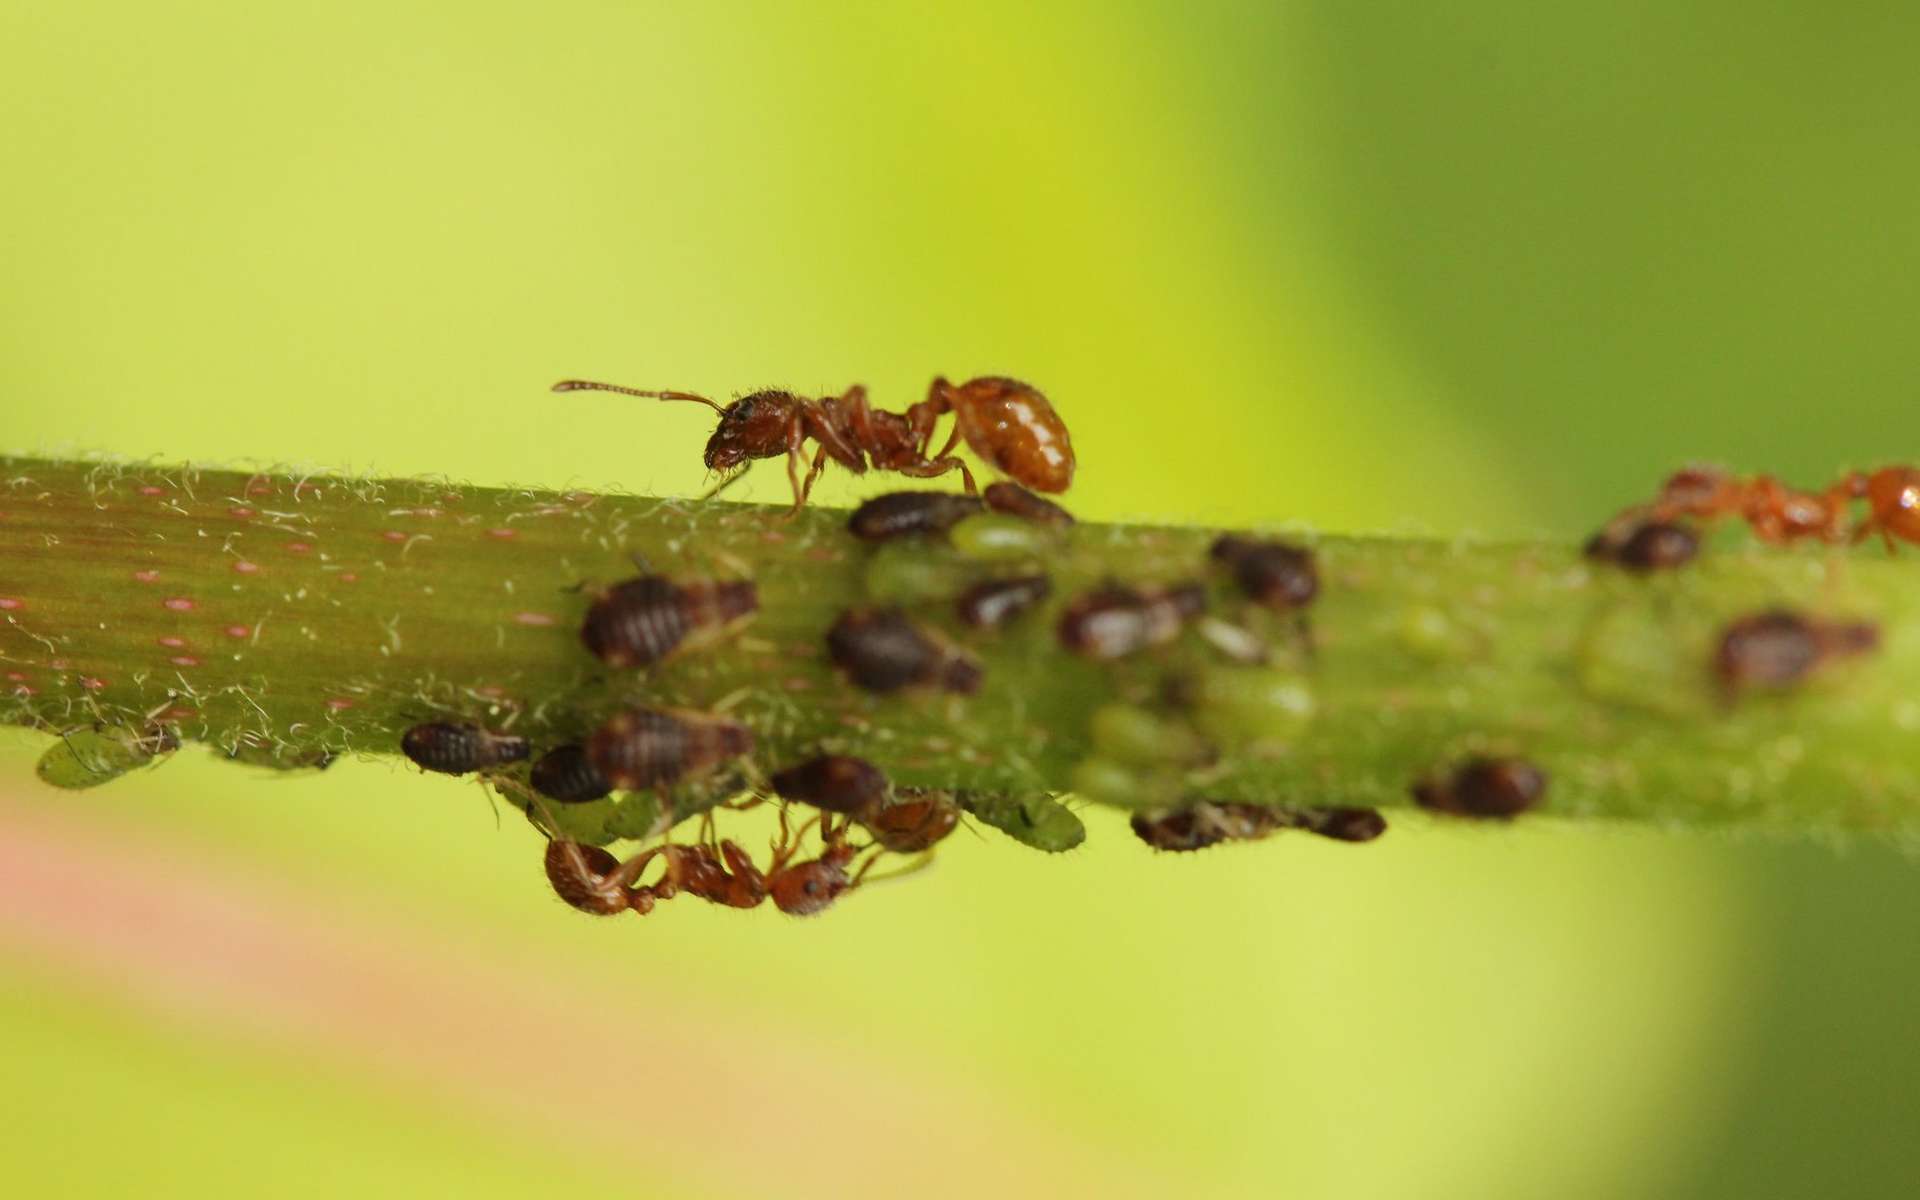 Les pucerons sécrètent du liquide collant appelé miellat dont se servent les fourmis pour se nourrir et les abeilles pour fabriquer du miel. © Adam Khalife, Flickr